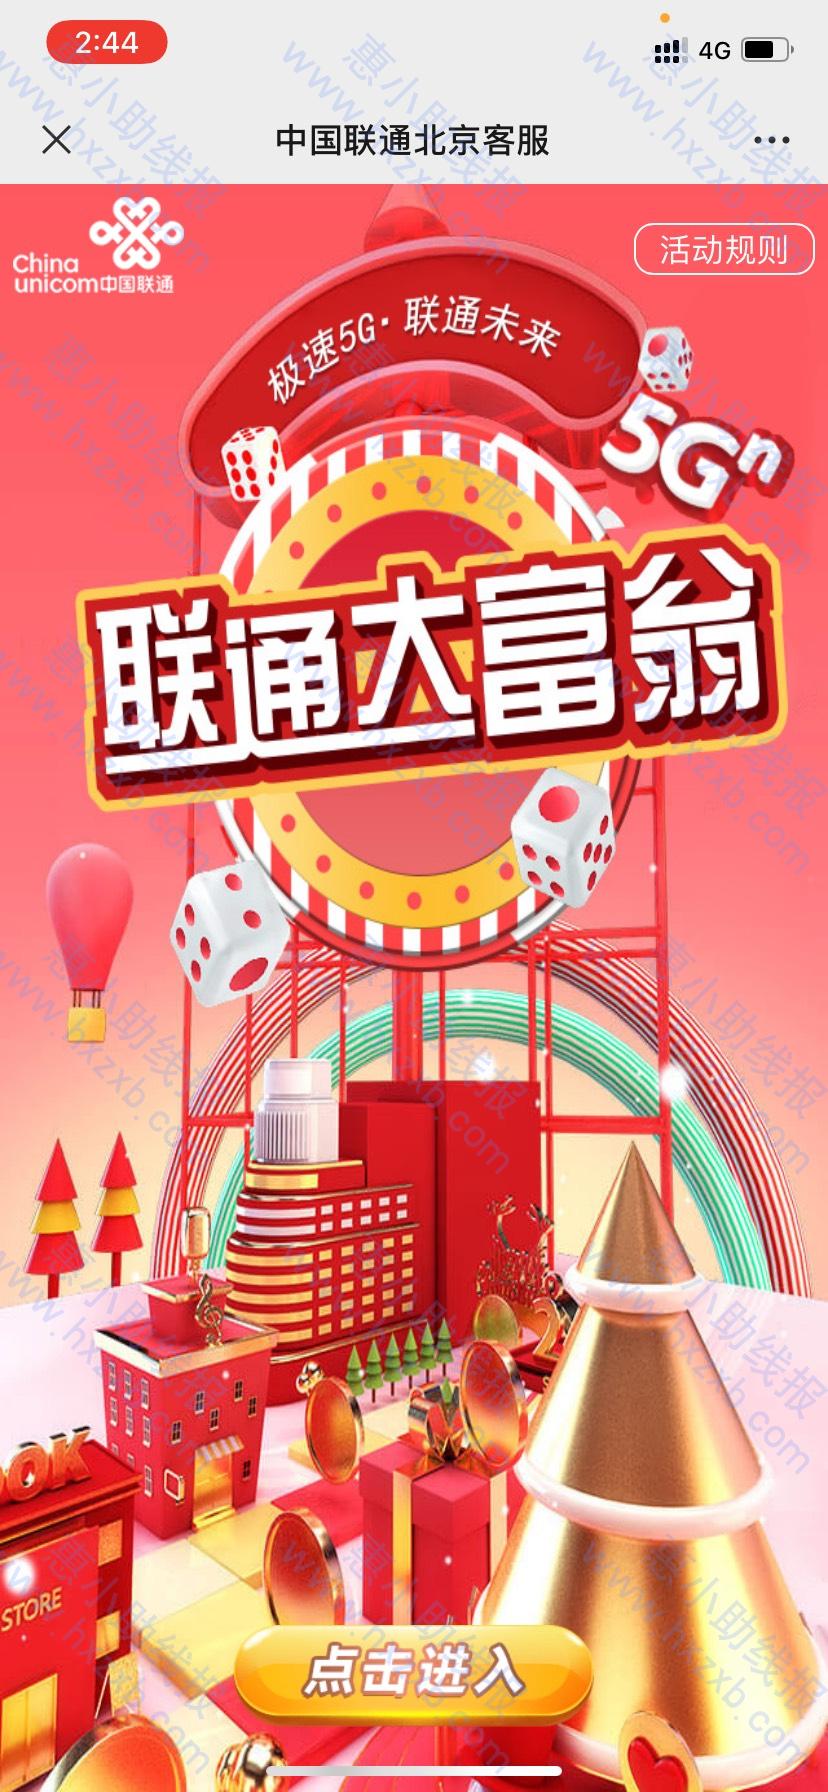 中国联通妇女节抽红包